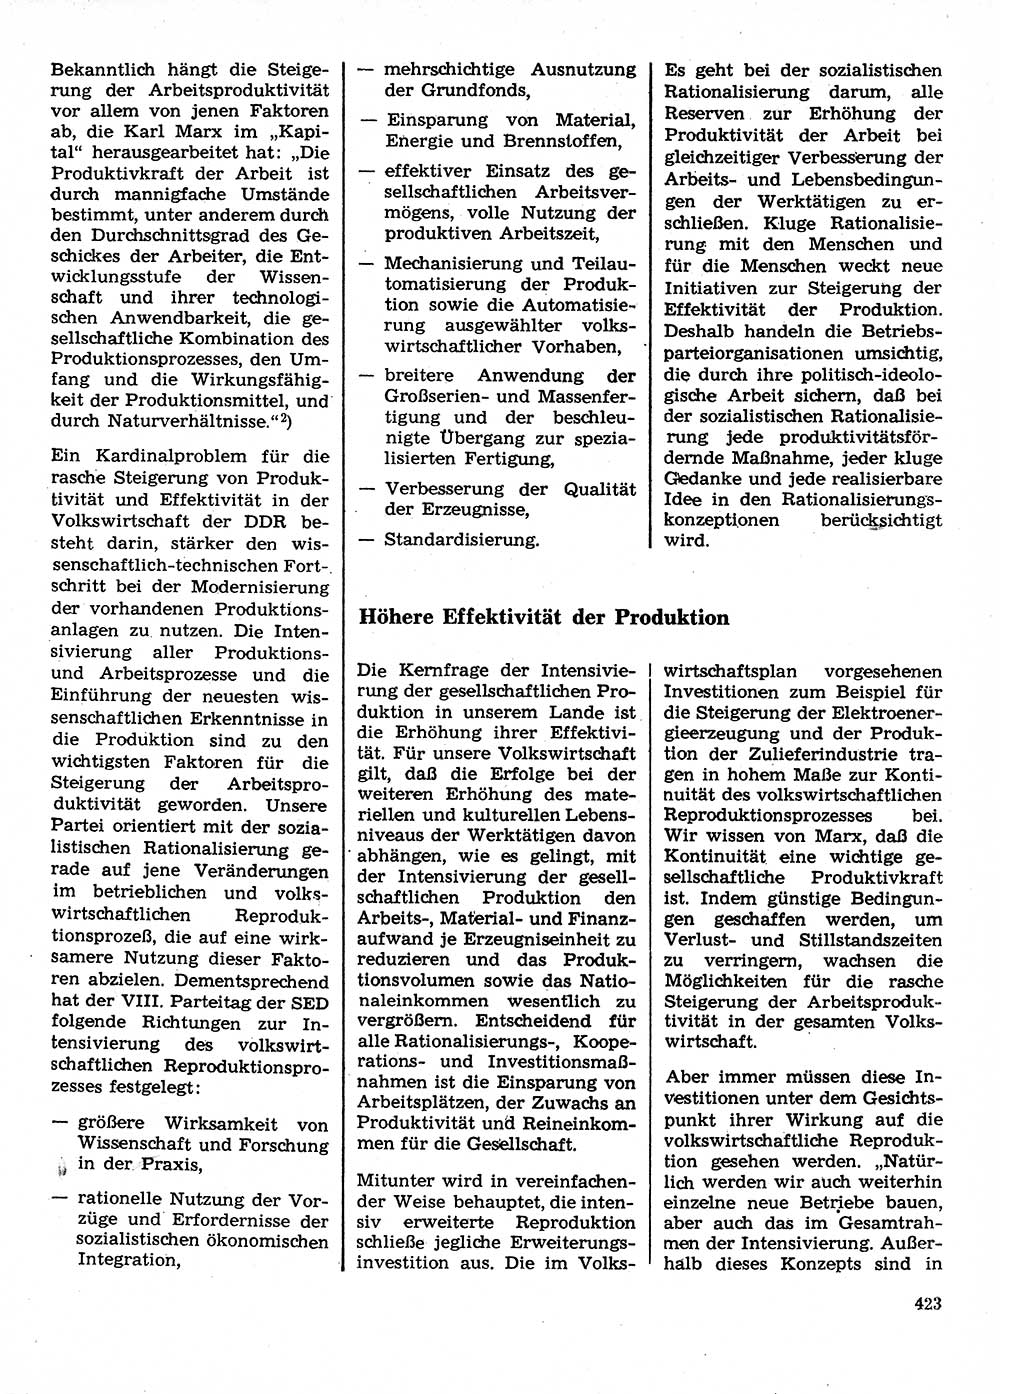 Neuer Weg (NW), Organ des Zentralkomitees (ZK) der SED (Sozialistische Einheitspartei Deutschlands) für Fragen des Parteilebens, 28. Jahrgang [Deutsche Demokratische Republik (DDR)] 1973, Seite 423 (NW ZK SED DDR 1973, S. 423)